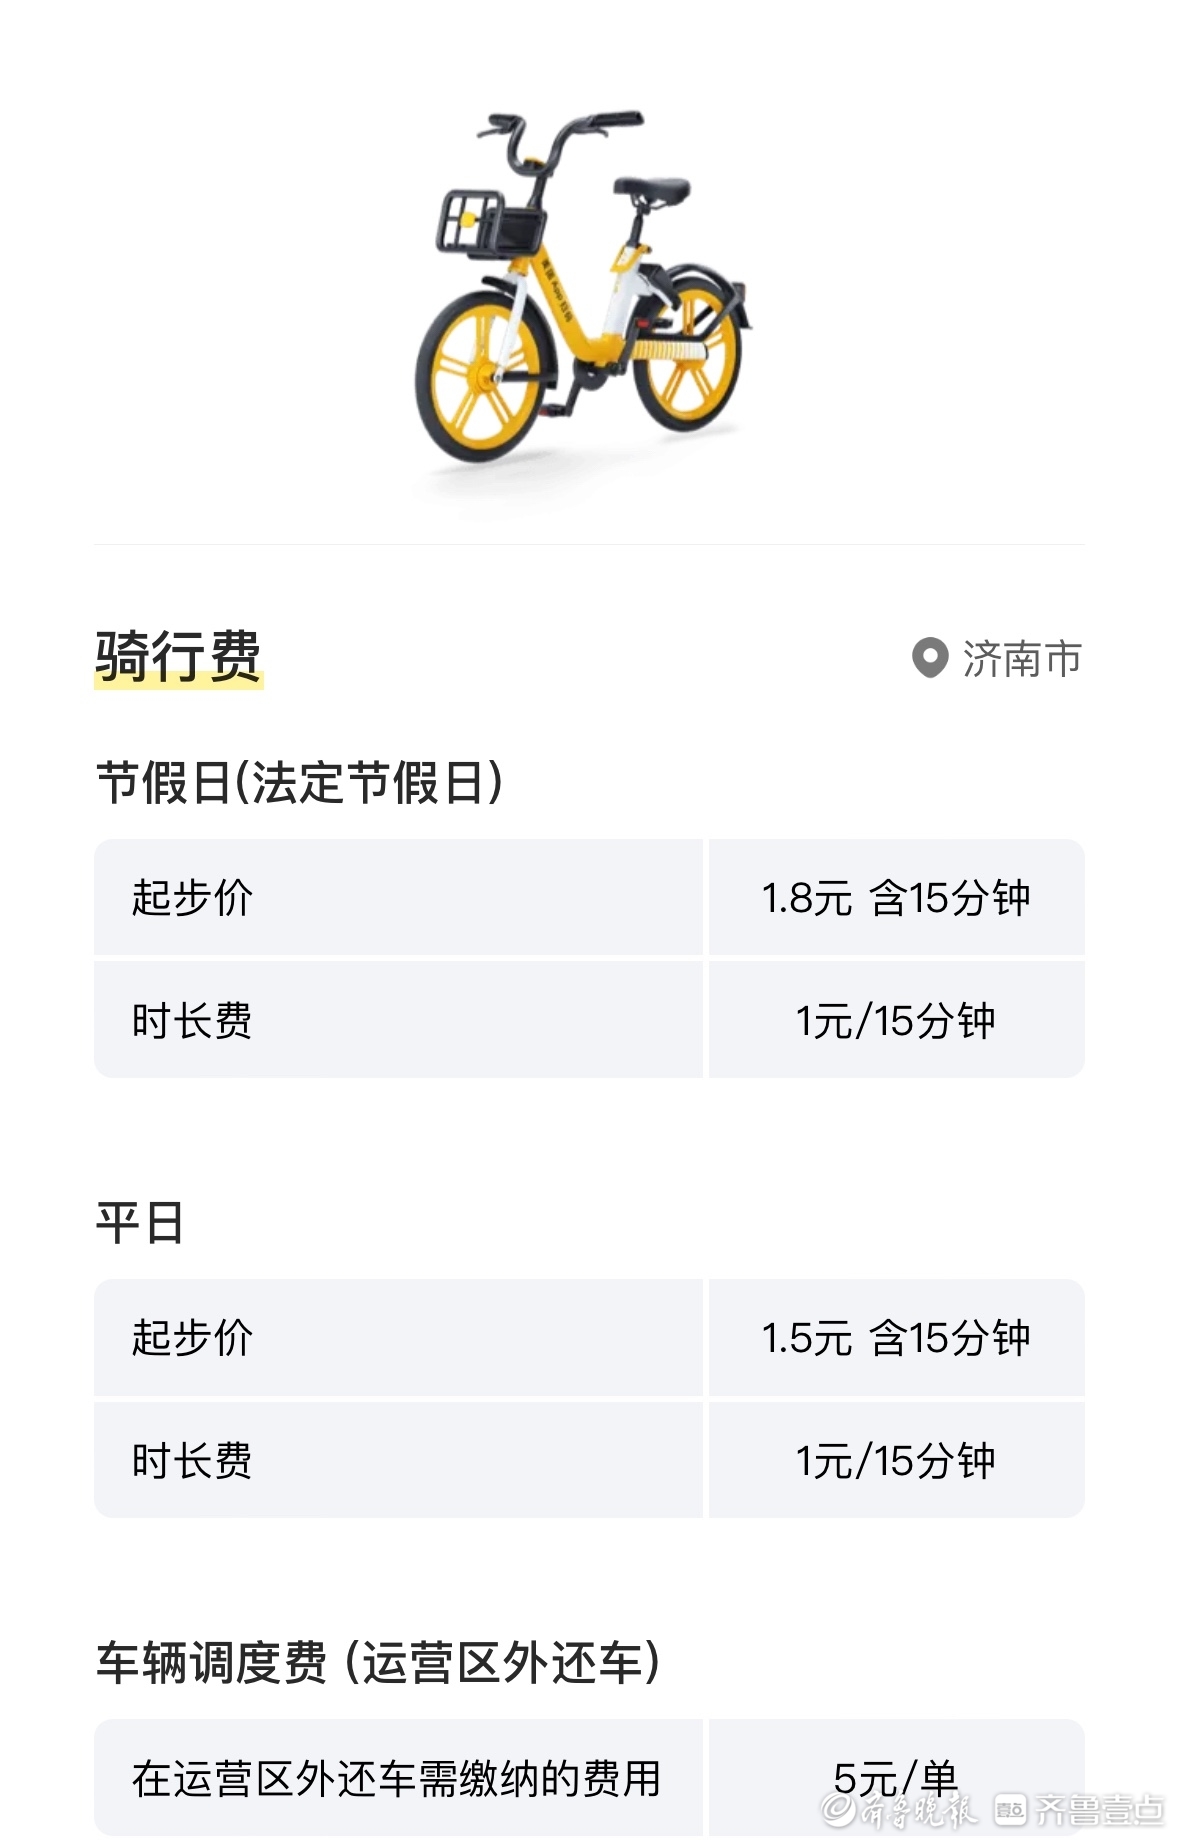 早在2019年底,共享单车就迎来了一次涨价潮,北京,上海,广州等城市率先